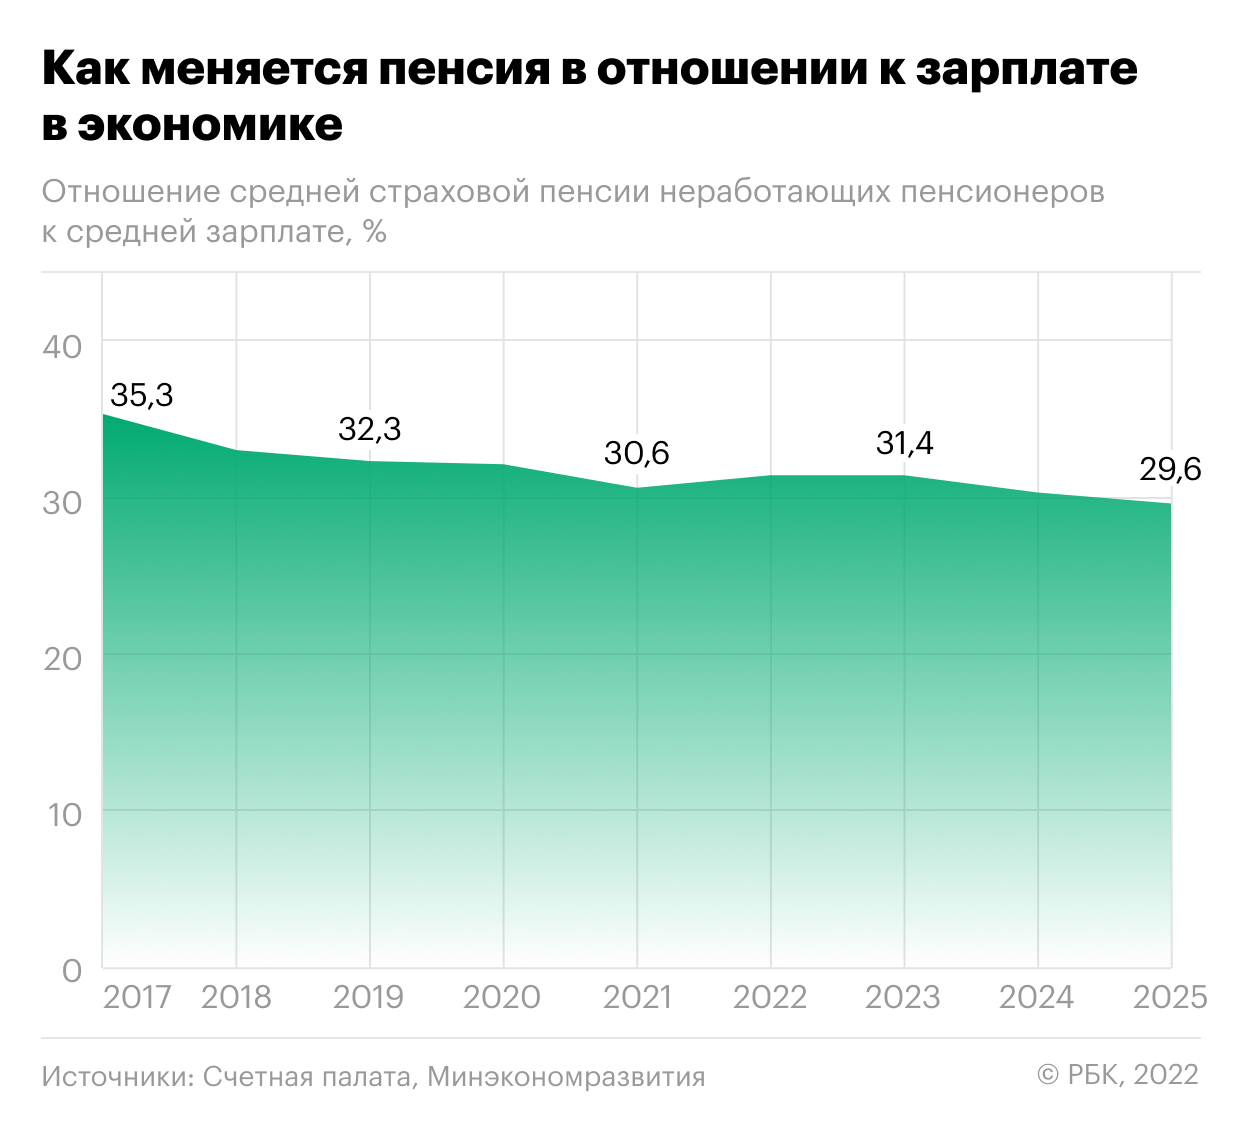 Баллы для пенсии в 2025 году. Уровень пенсии в России. Российская экономика растет. Инфляция в экономике России. Индексация пенсий.